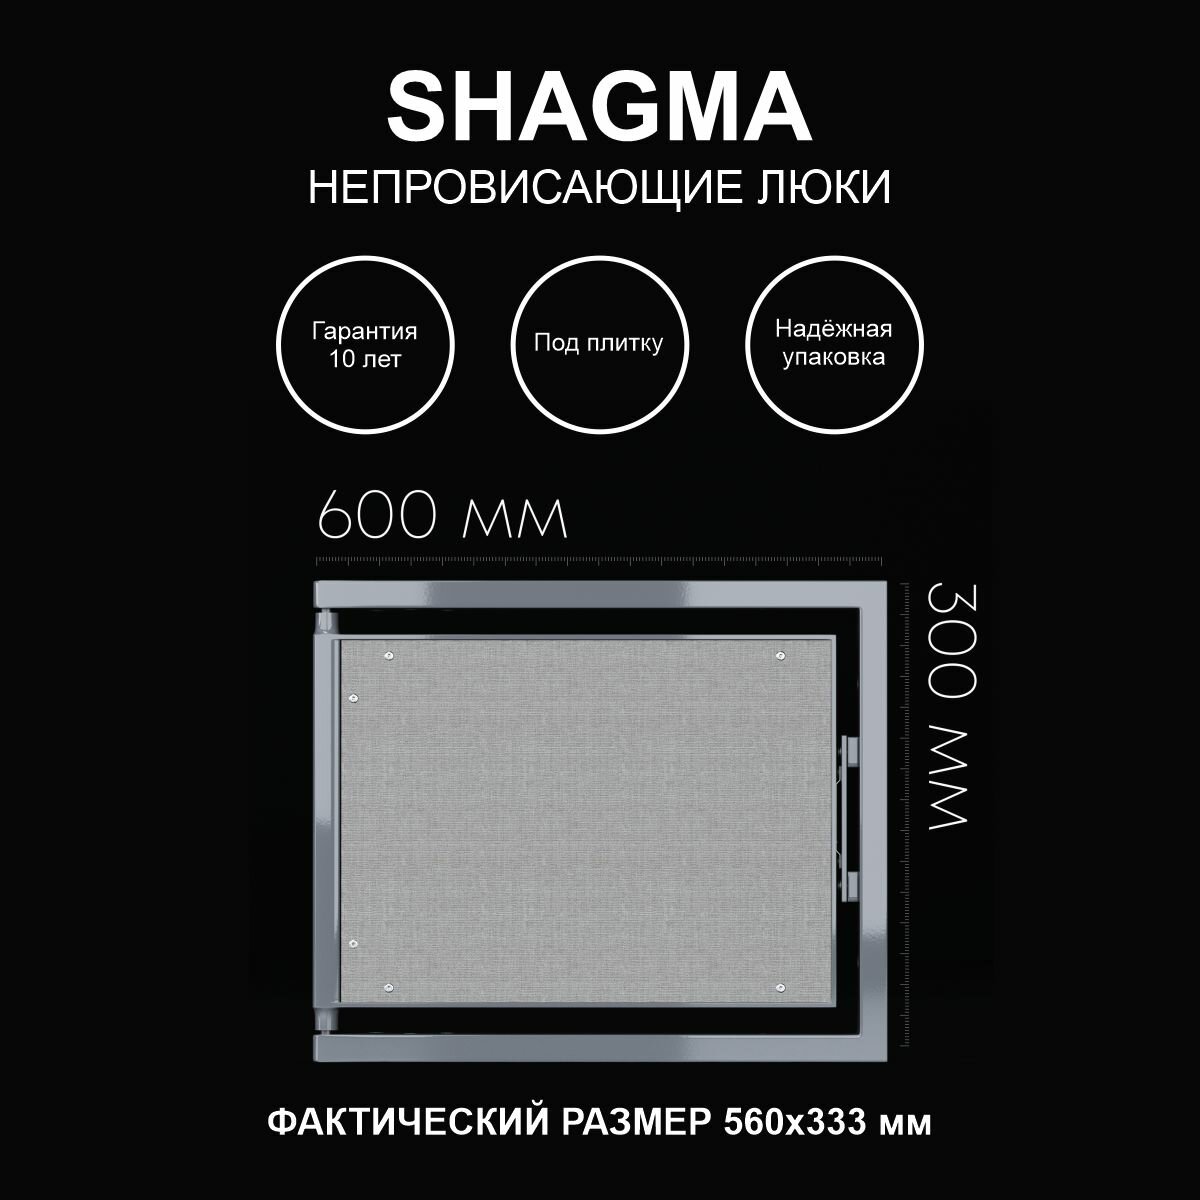 Люк ревизионный под плитку 600х300 мм одностворчатый сантехнический настенный фактический размер 560(ширина) х 333(высота) мм SHAGMA